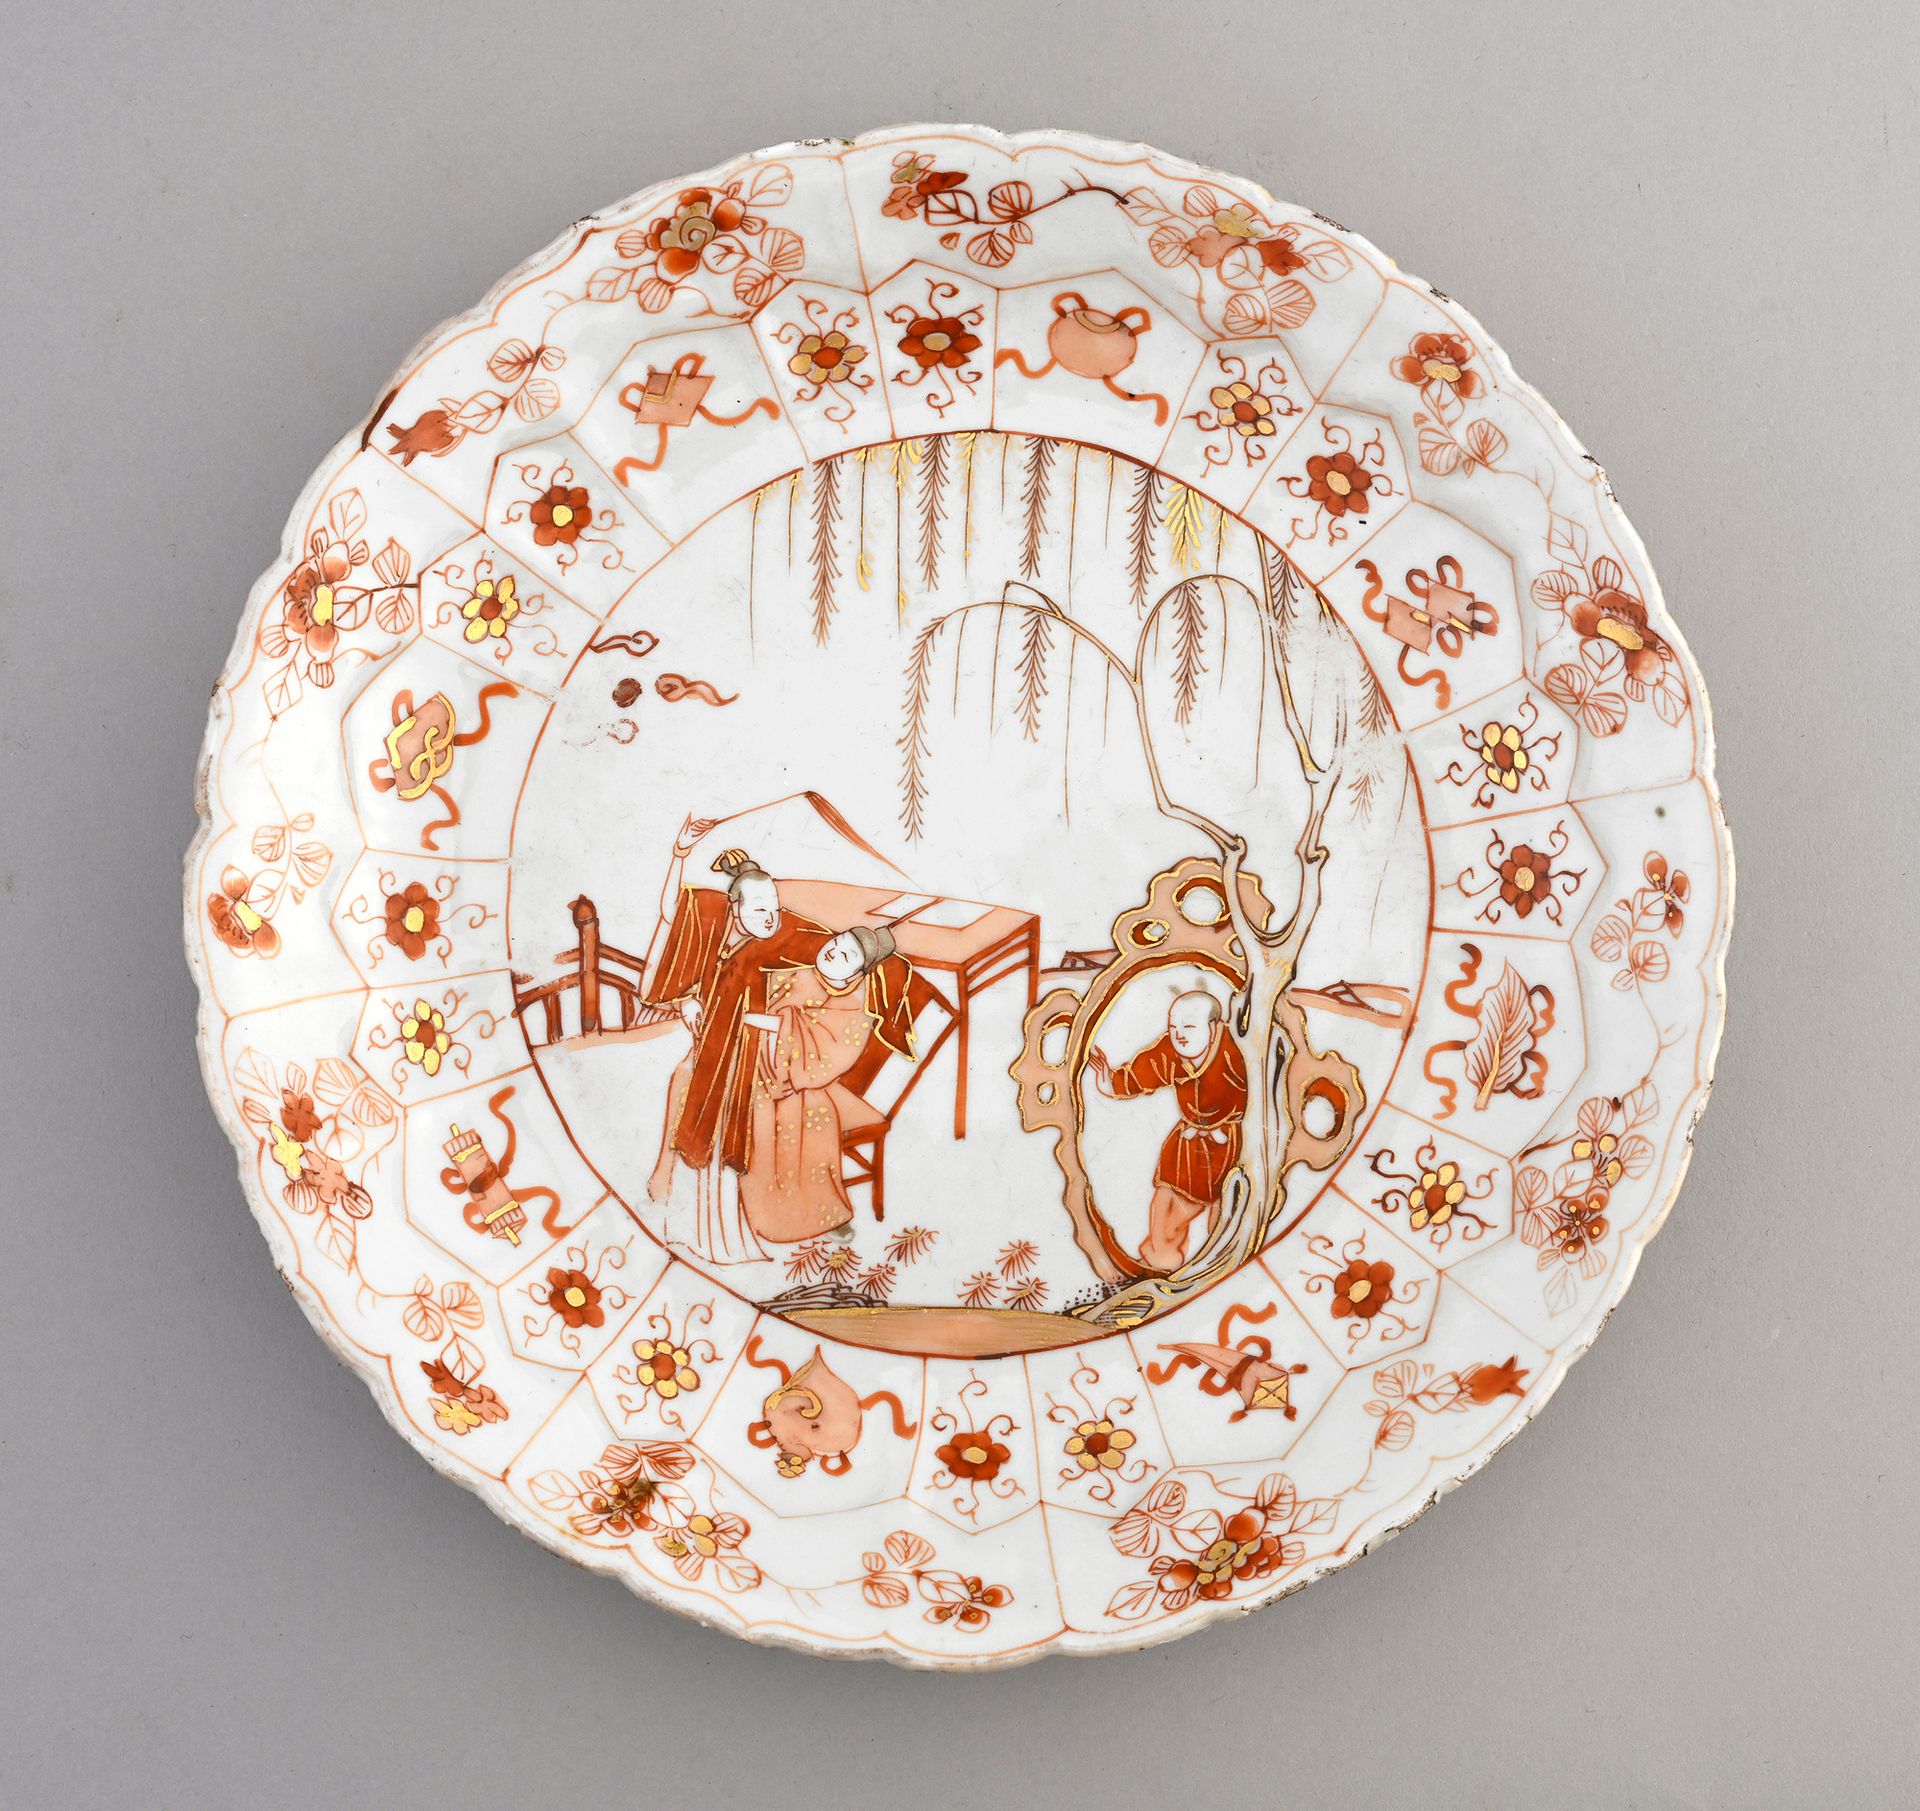 CHINE, XVIIIe siècle* Schale aus Porzellan
Runde Form mit festoniertem Rand, mit&hellip;